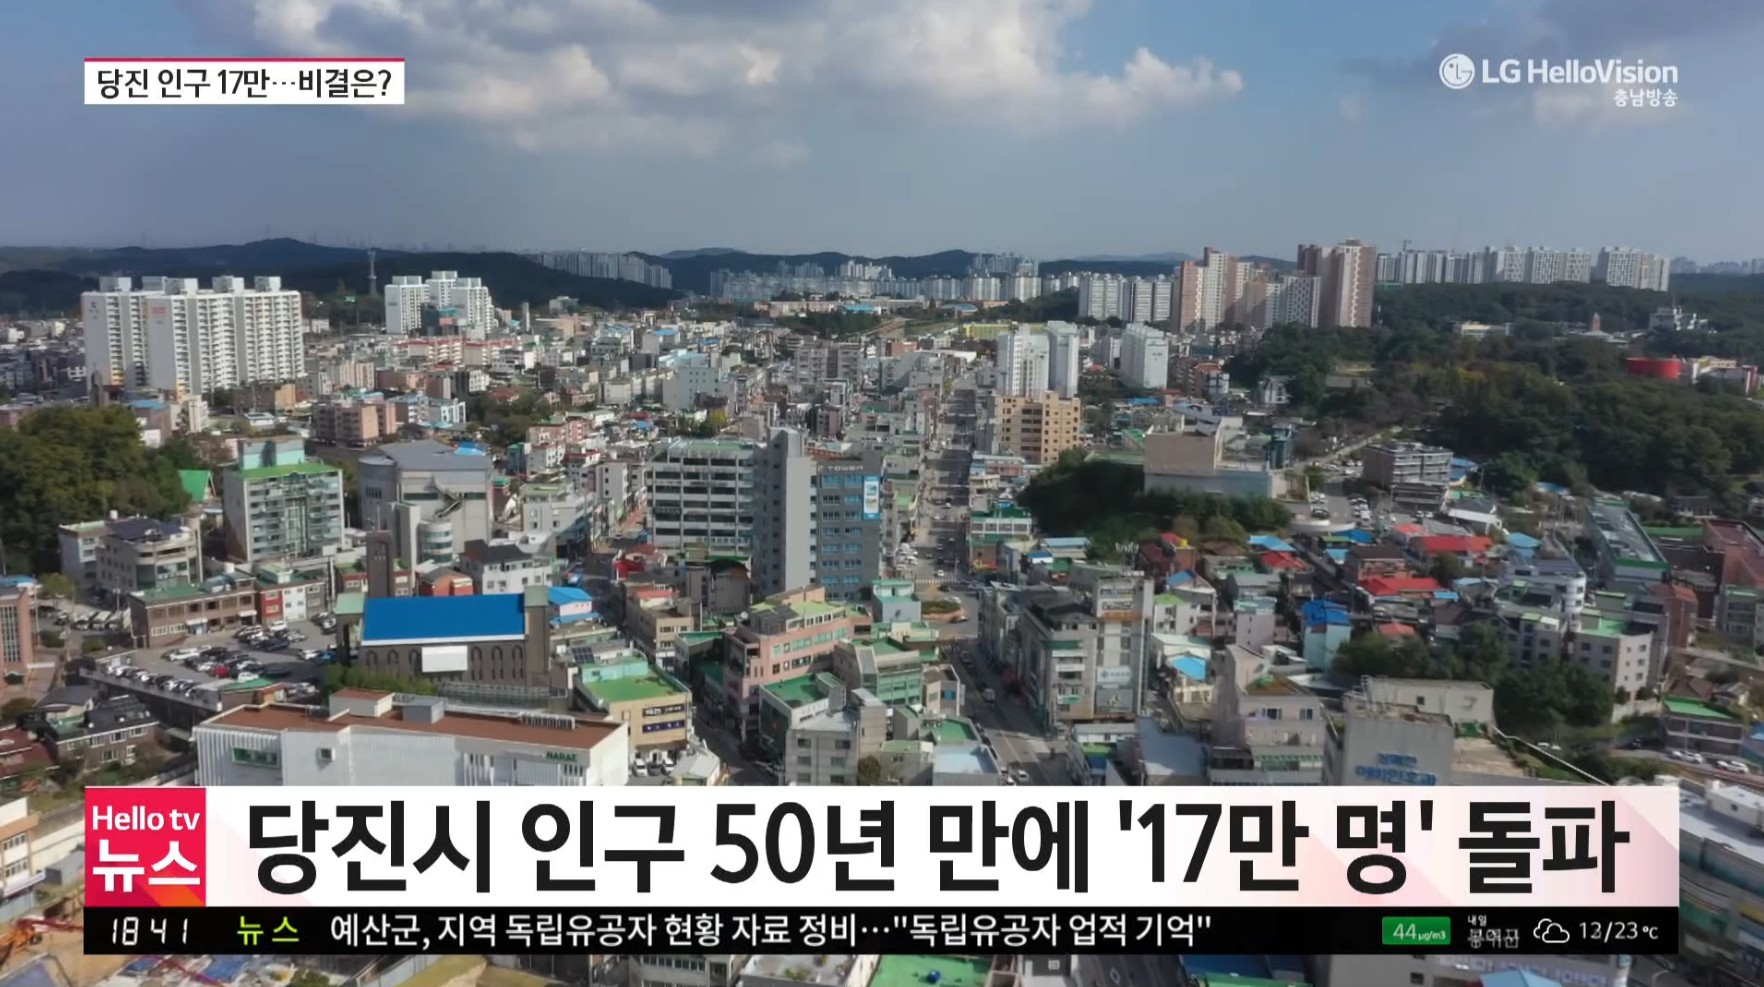 당진 50년만에 인구 17만명 돌파_충남방송뉴스보도10.31